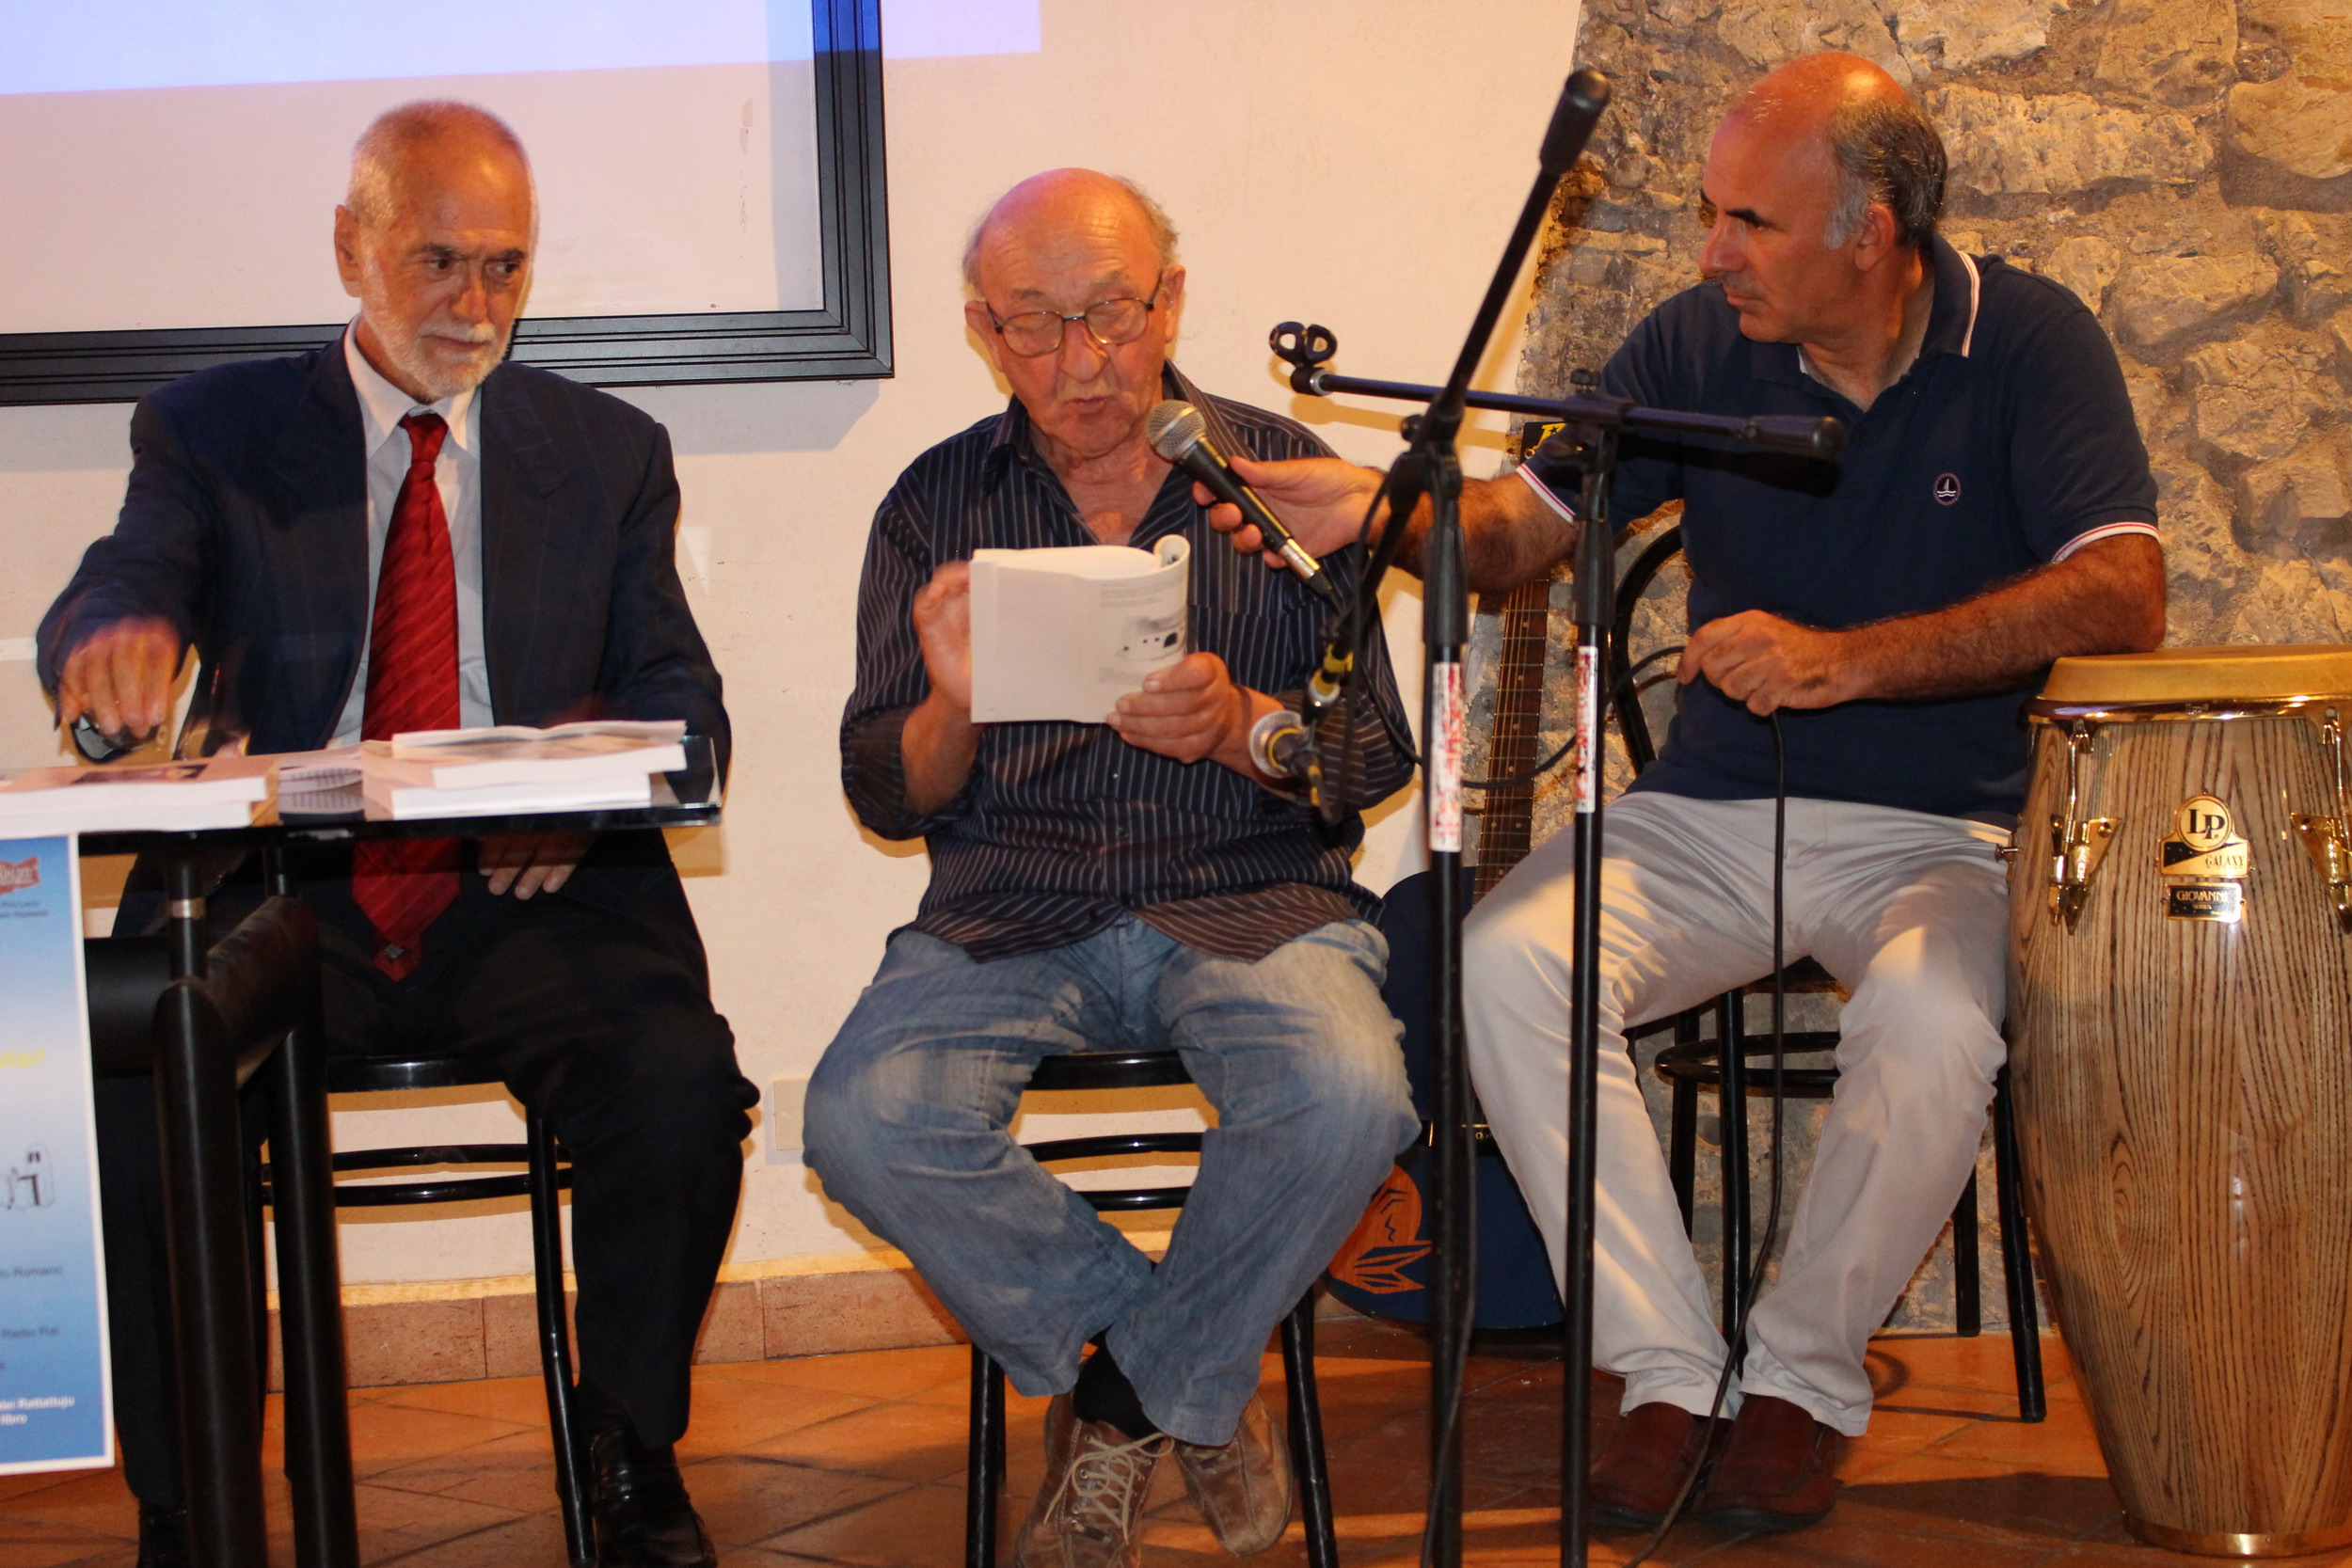 Da sinistra: Vincenzo Luciani, Giardini Palmiro durante la lettura di una poesia, Marco Giardini